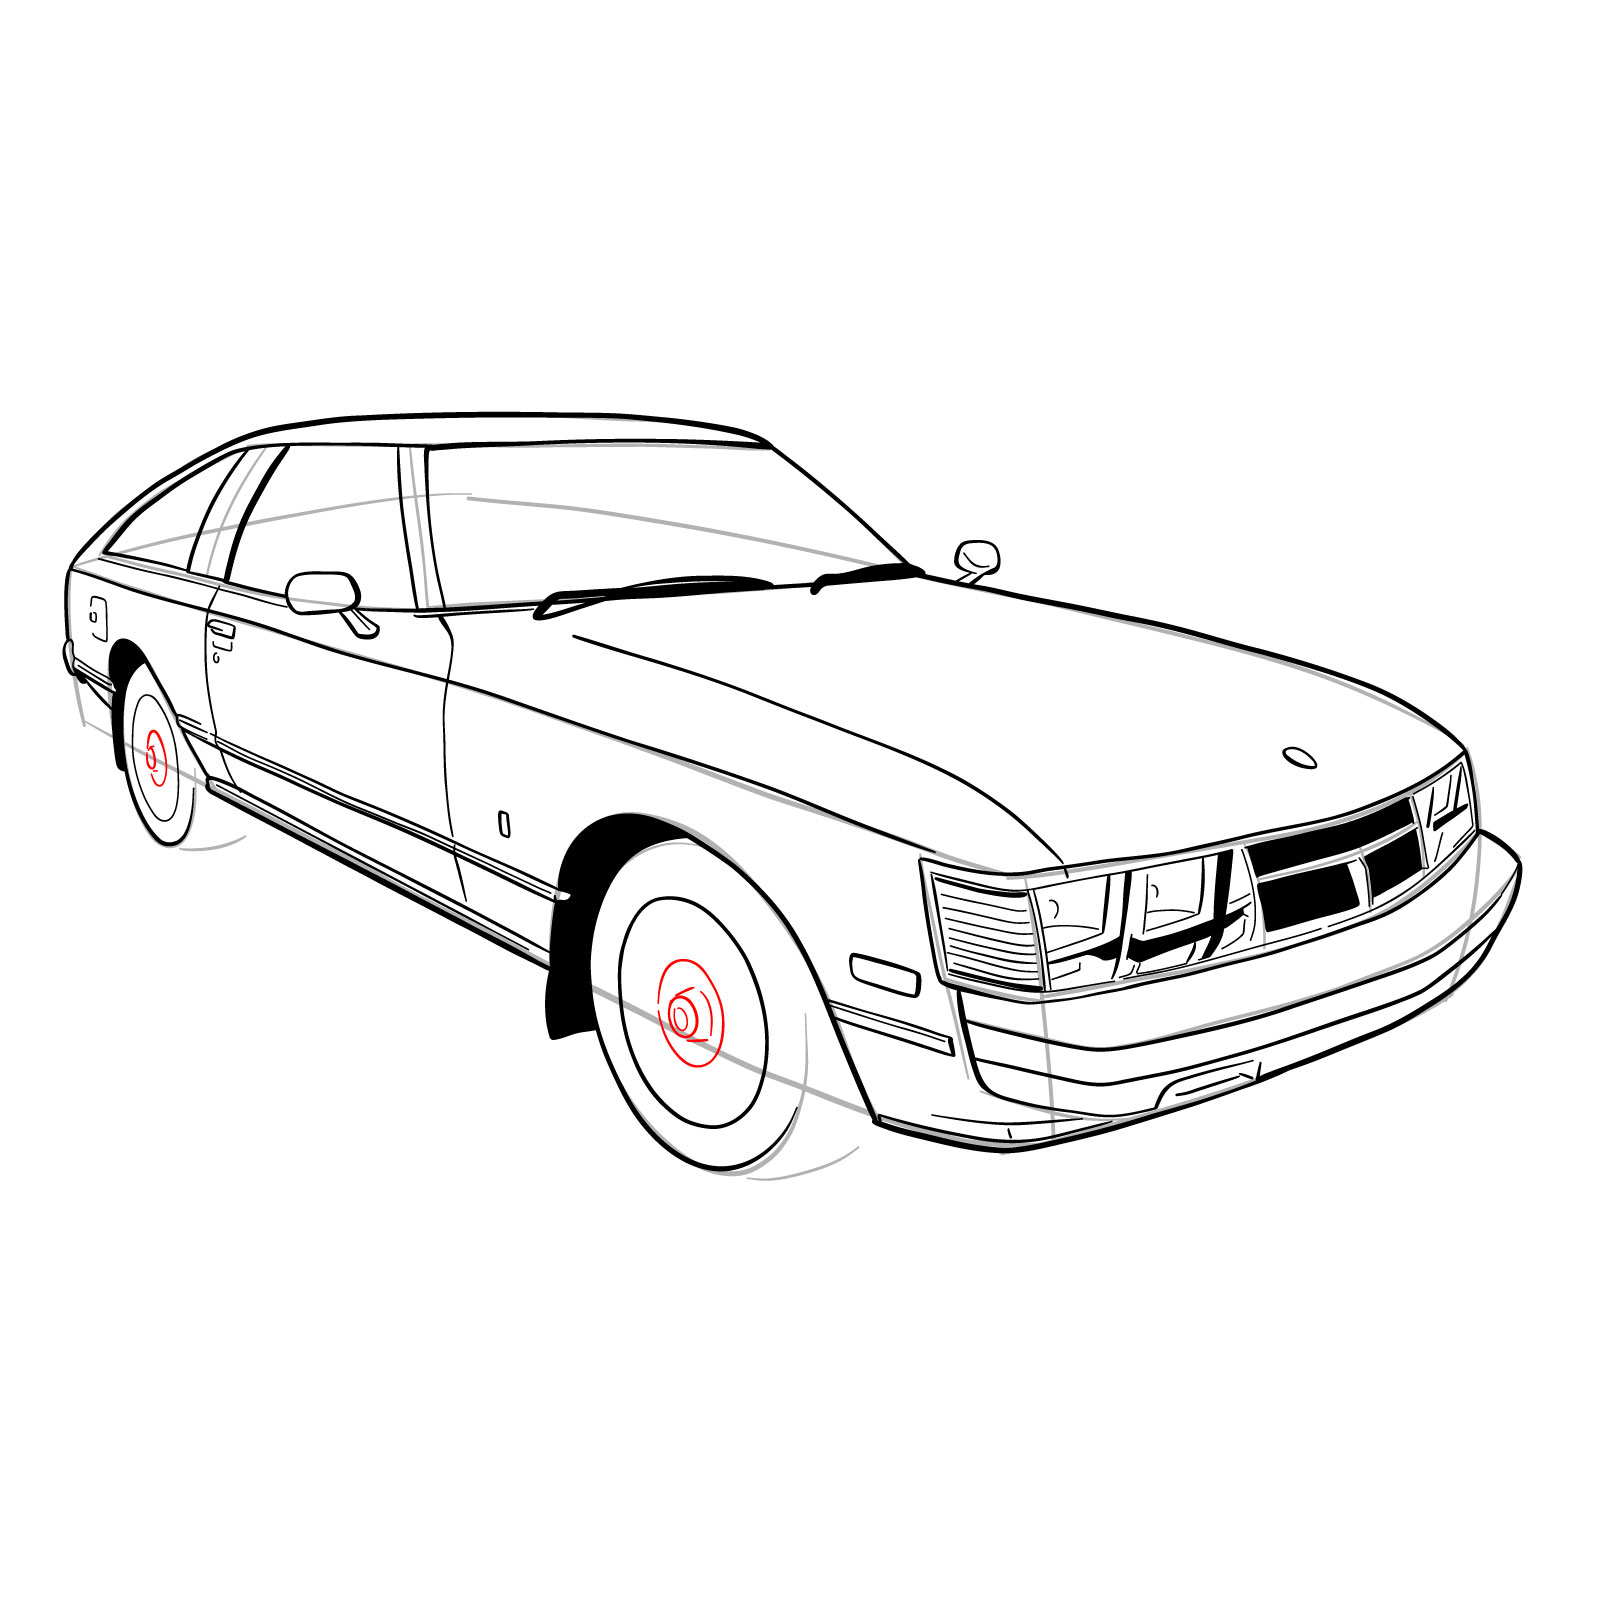 How to draw a 1979 Toyota Celica Supra Mk I Coupe - SketchOk